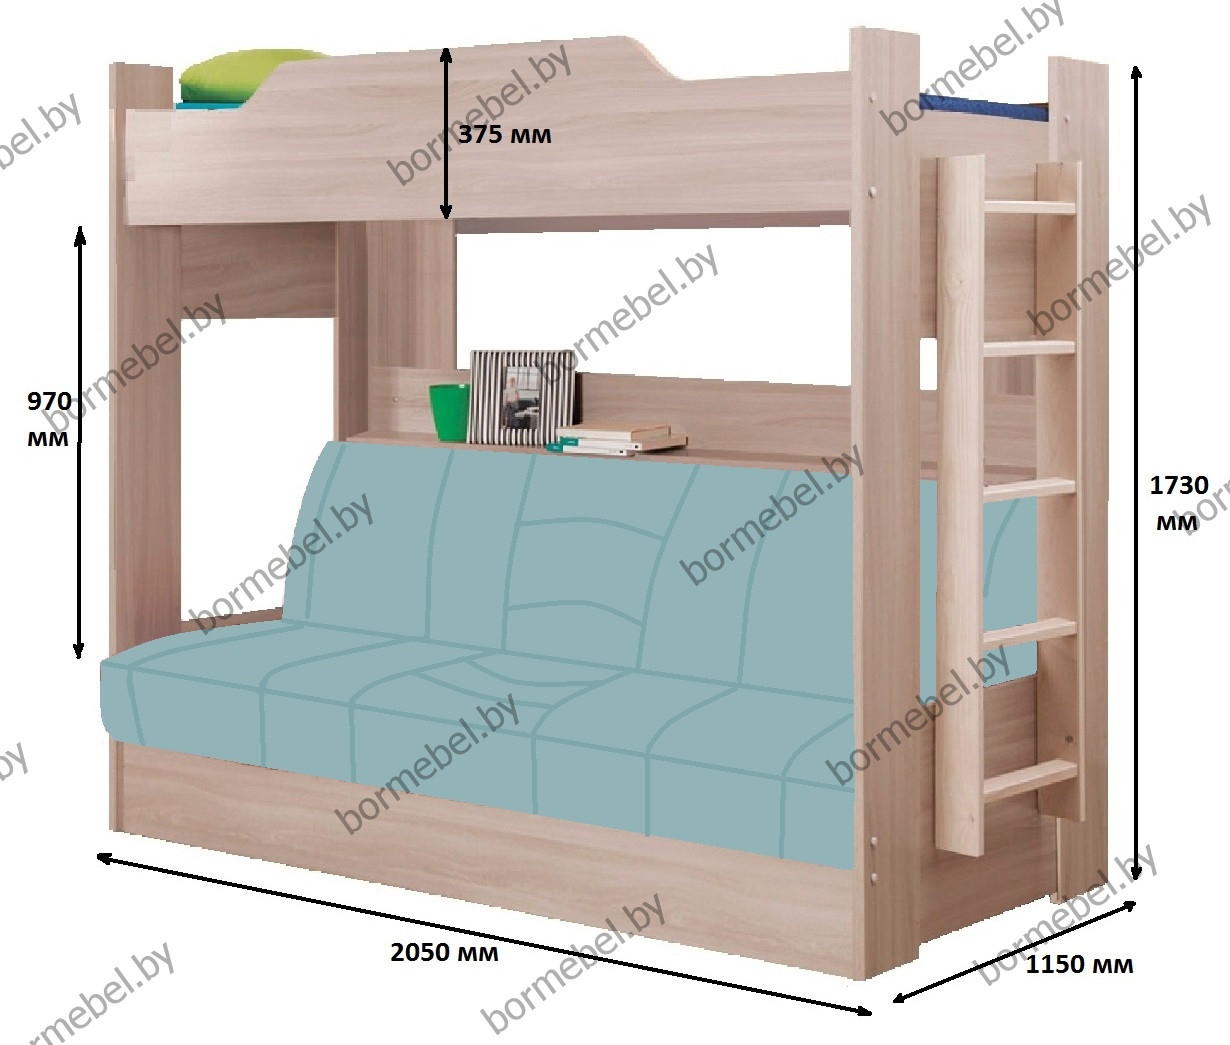 Как выглядит простой чертеж двухъярусной кровати из ДСП?